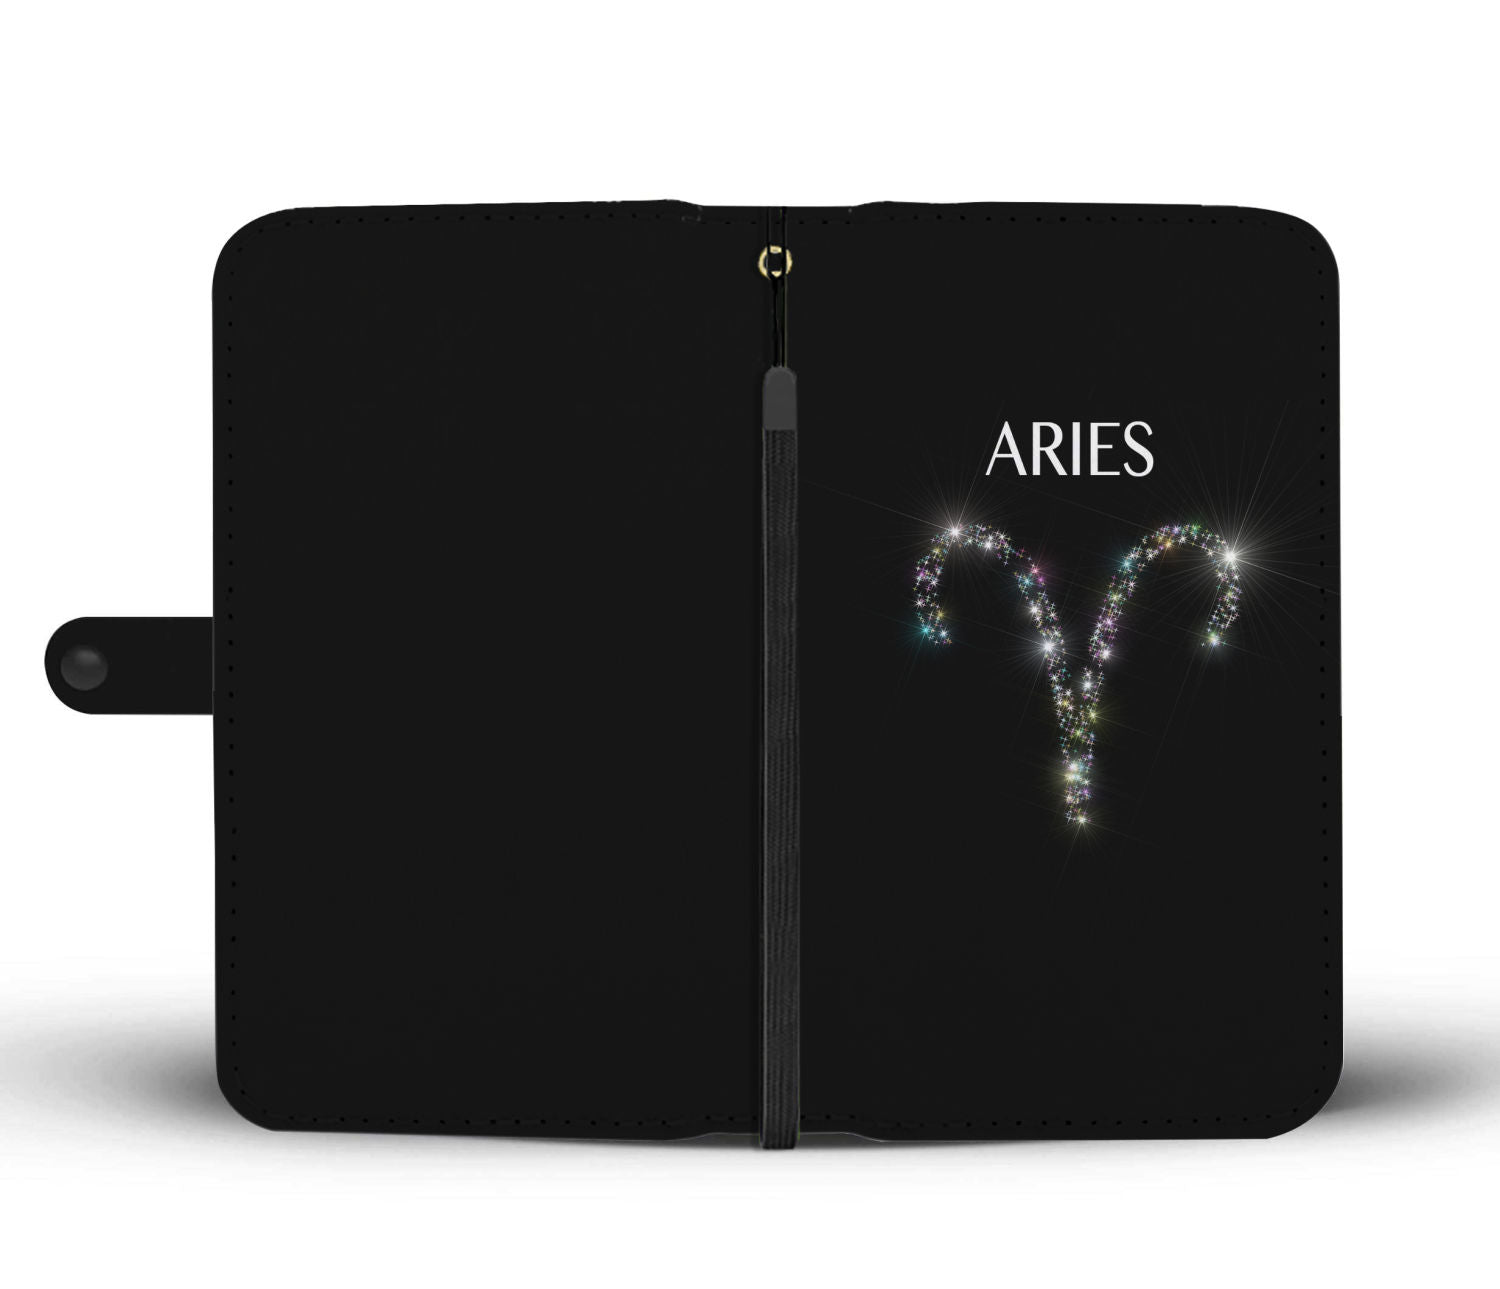 Aries Stars Phone Wallet